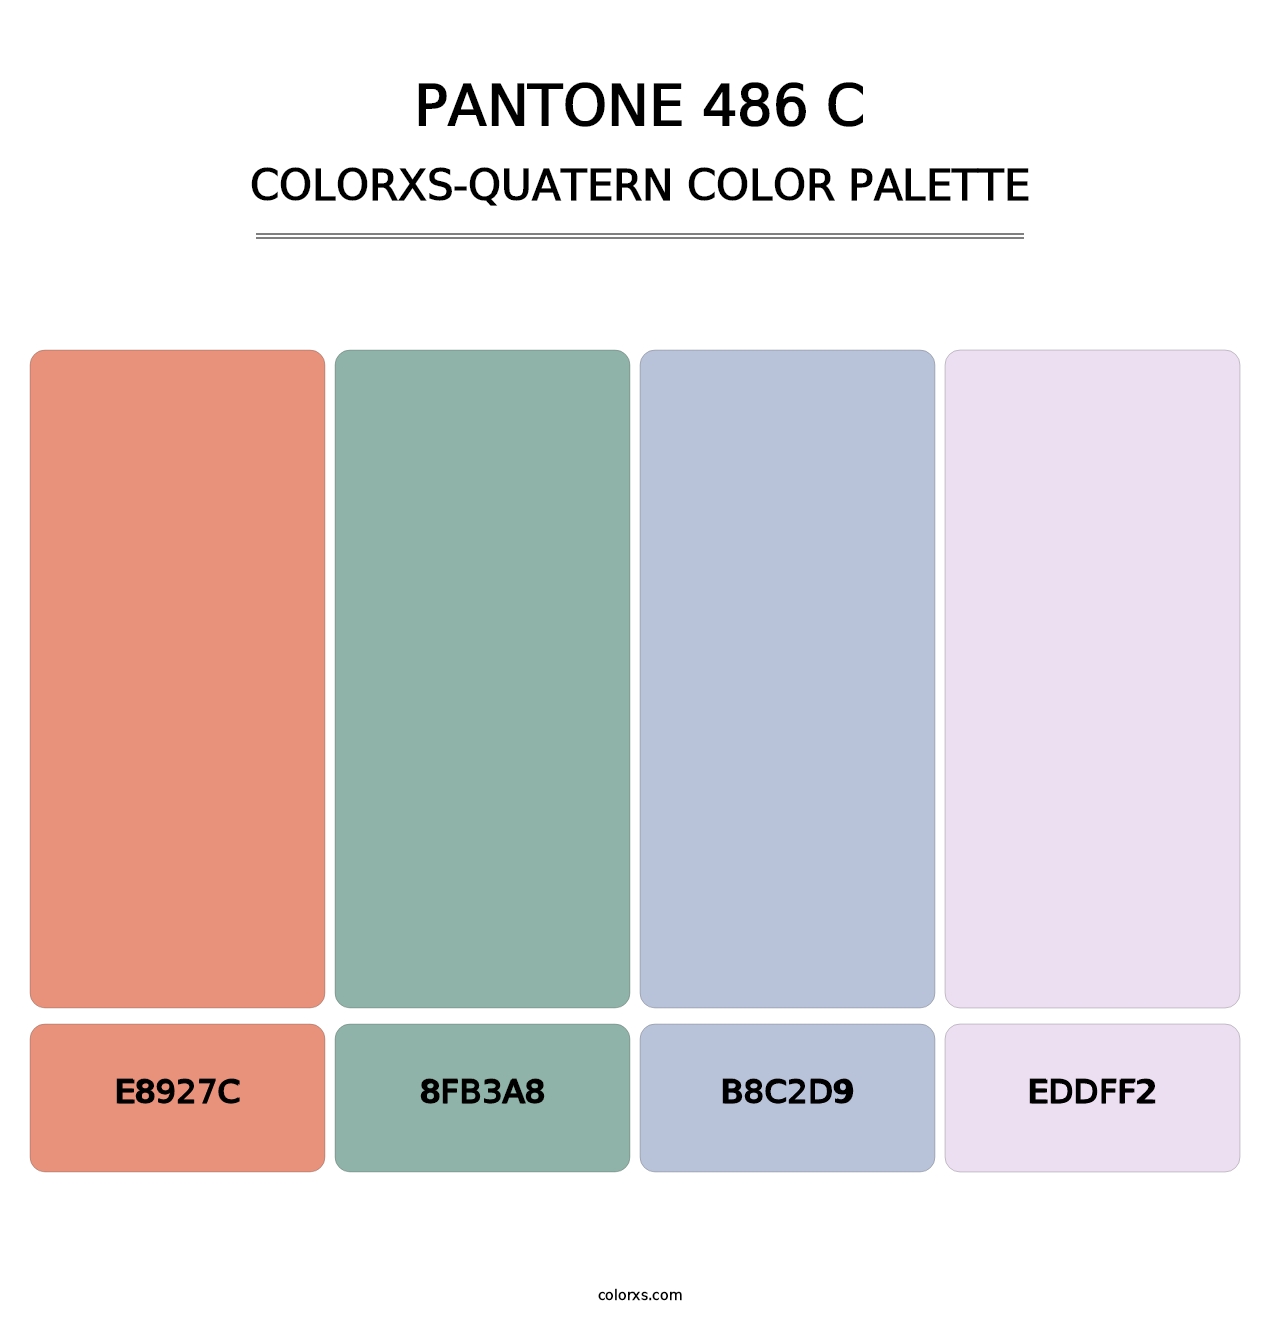 PANTONE 486 C - Colorxs Quatern Palette